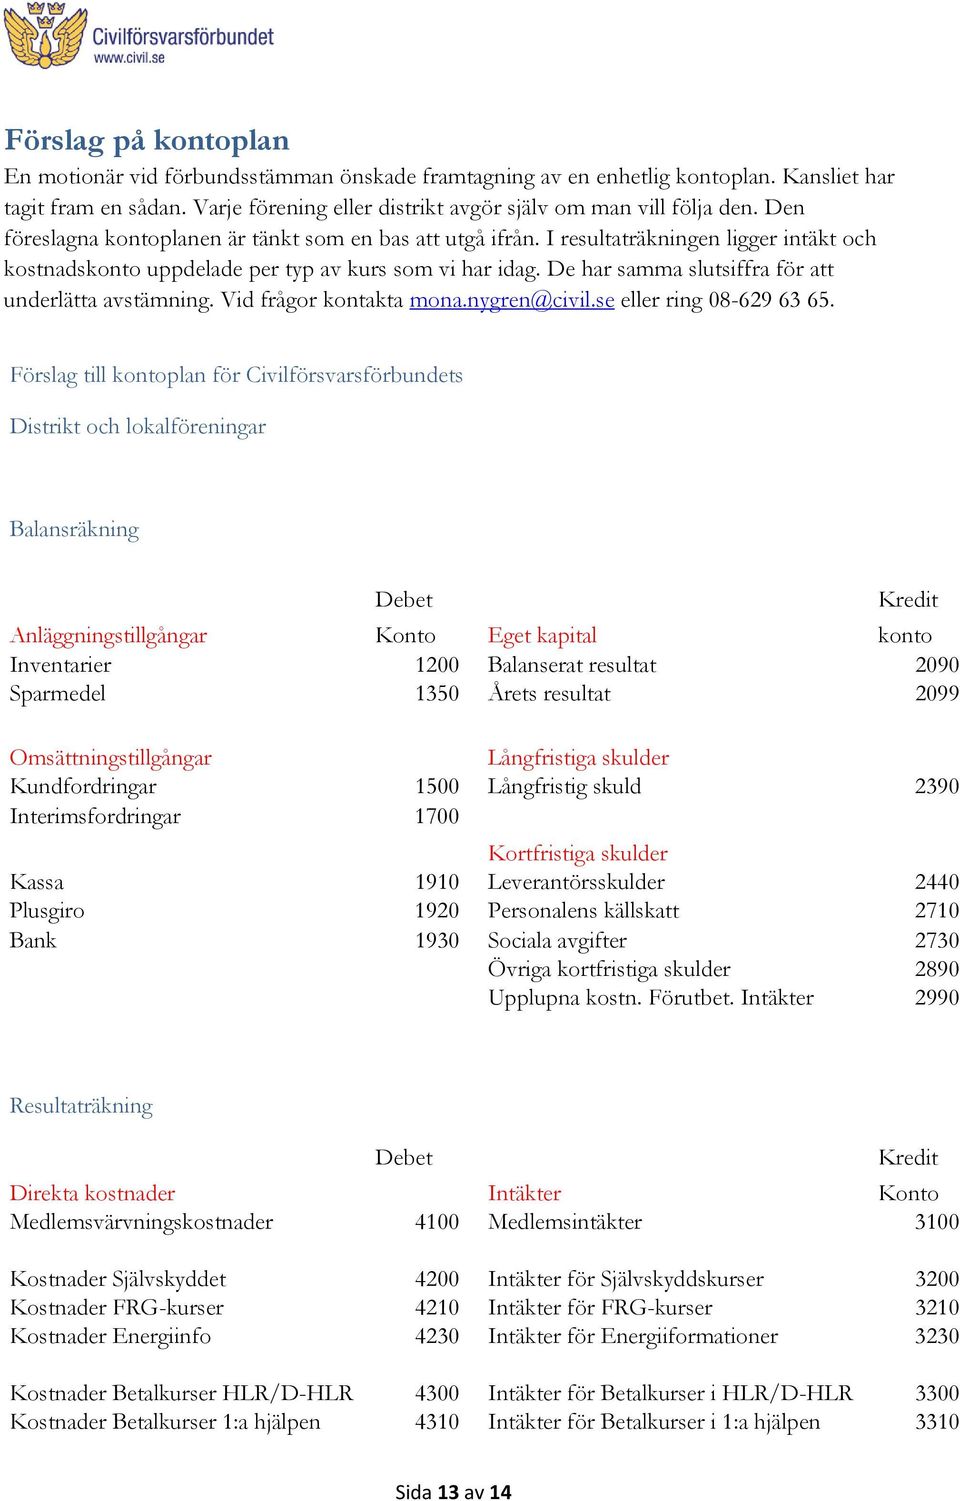 De har samma slutsiffra för att underlätta avstämning. Vid frågor kontakta mona.nygren@civil.se eller ring 08-629 63 65.